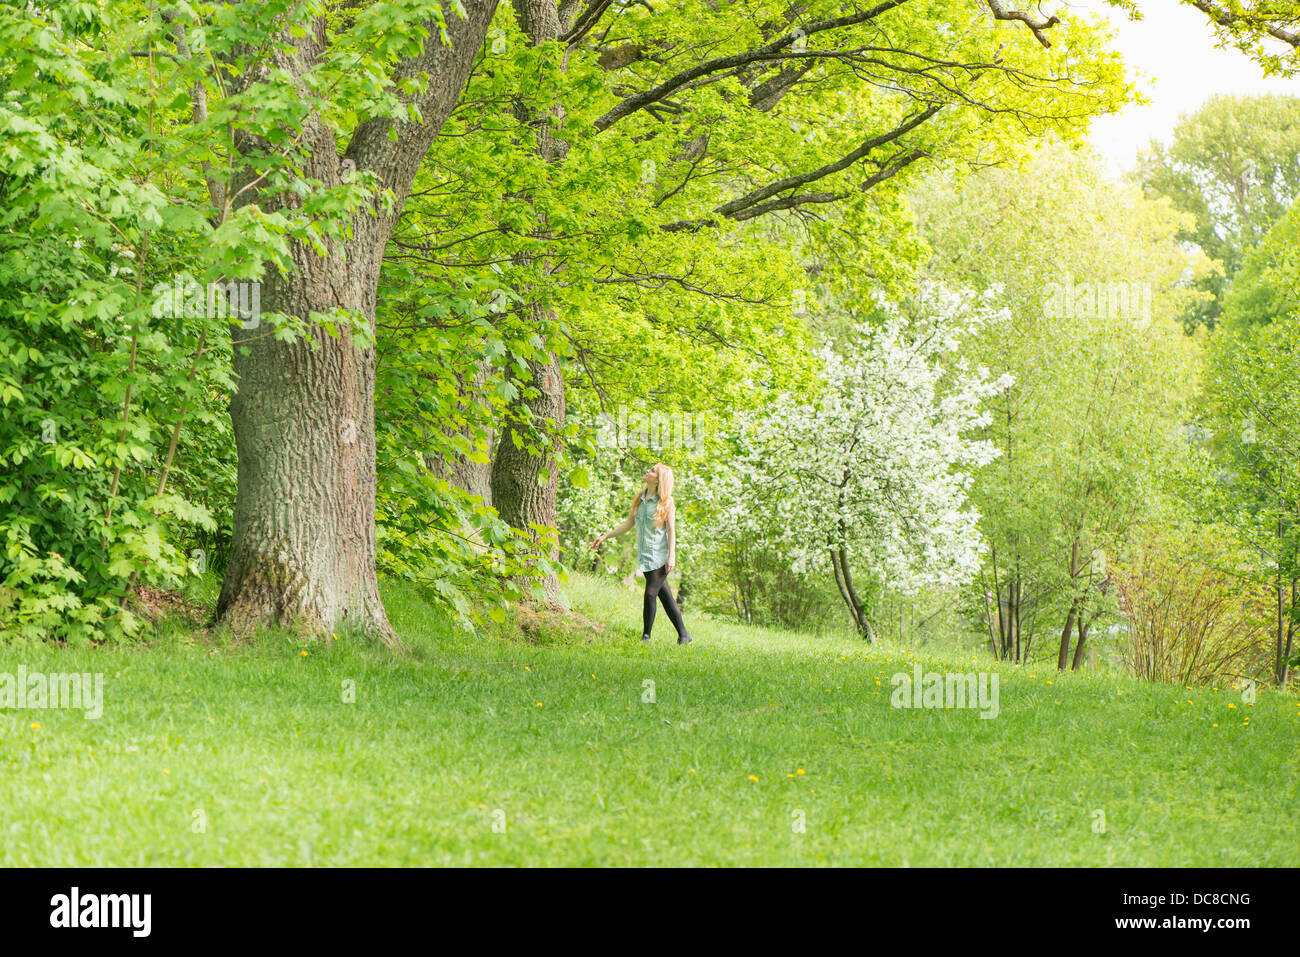 Natur-Szene mit einer jungen attraktiven Frau stehend von einem Baum in einem park Stockfoto